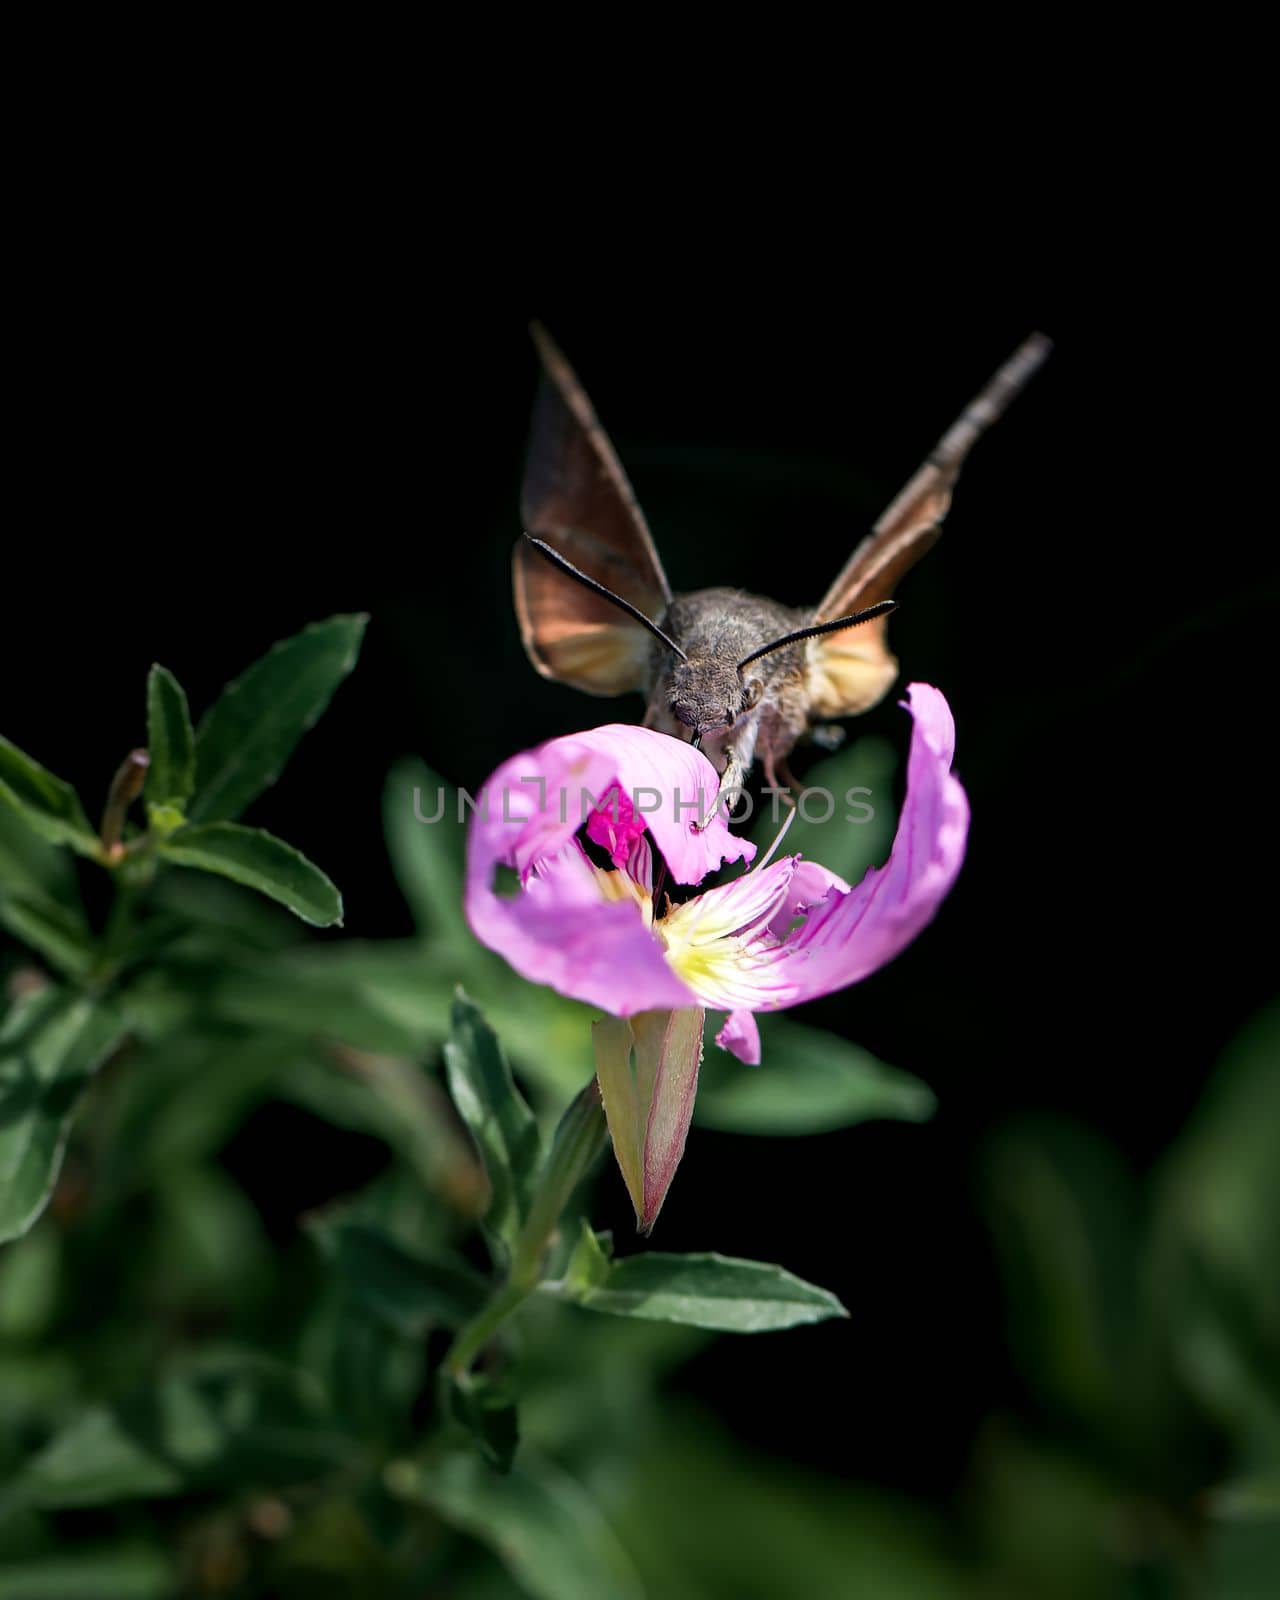 Flying Hummingbird or hawk-moth photo by Millenn